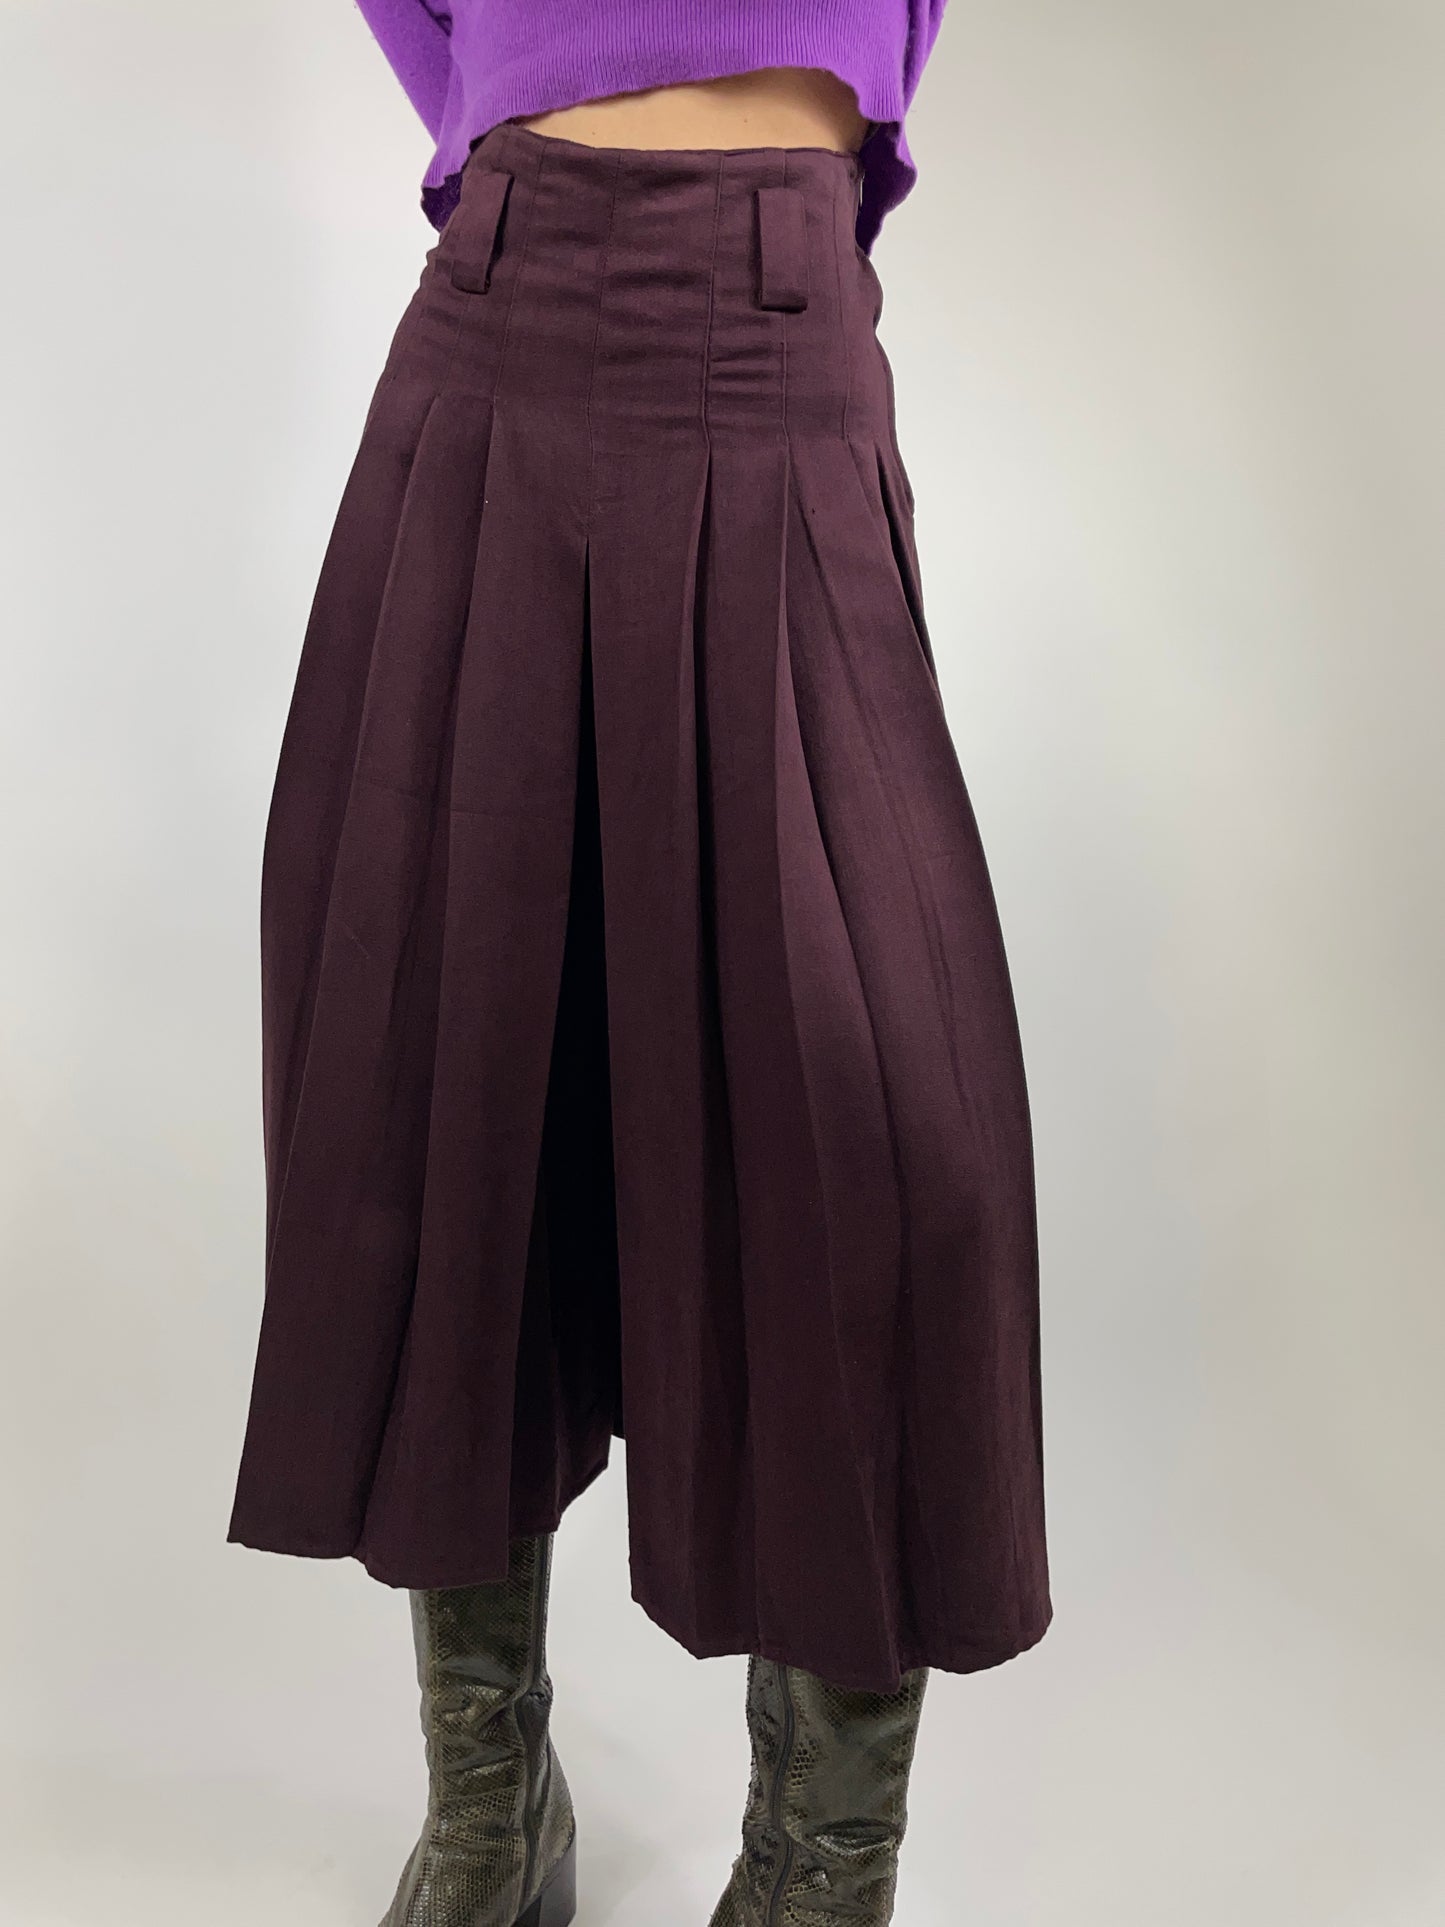 Pleated wool pant skirt